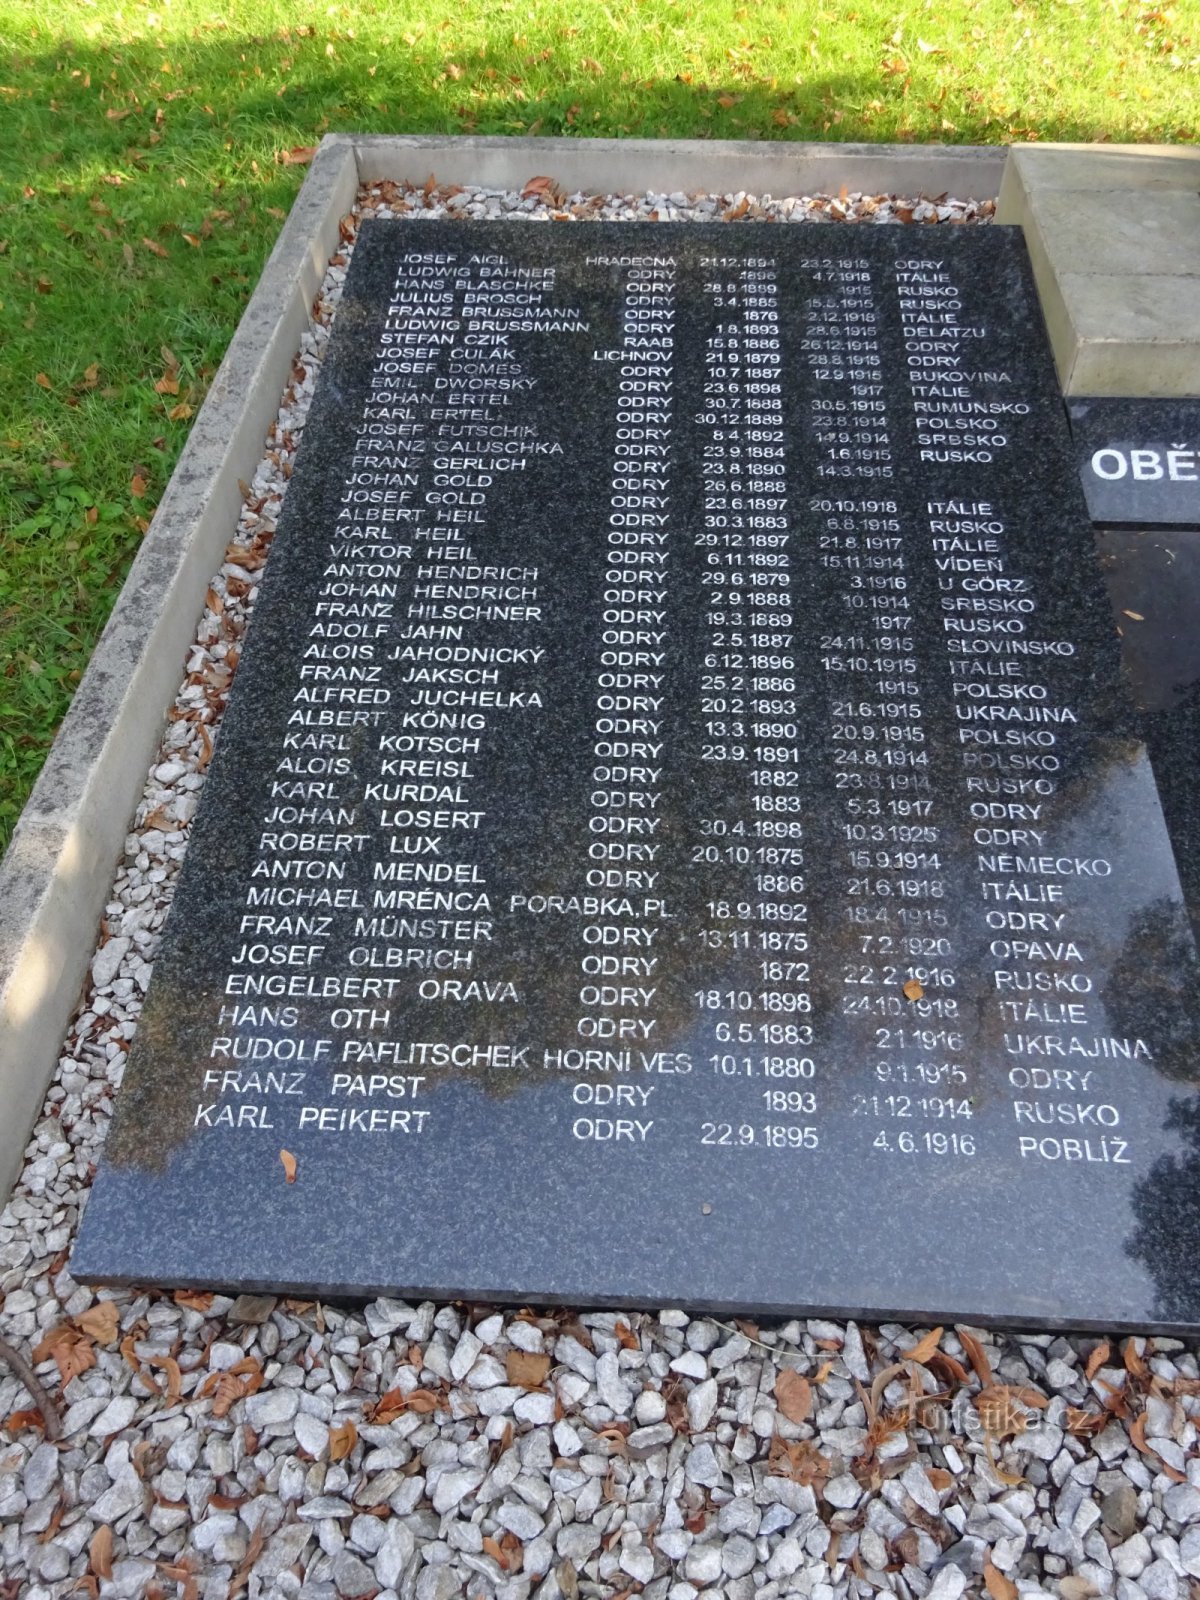 Odry - un monumento a coloro che morirono nella prima guerra mondiale